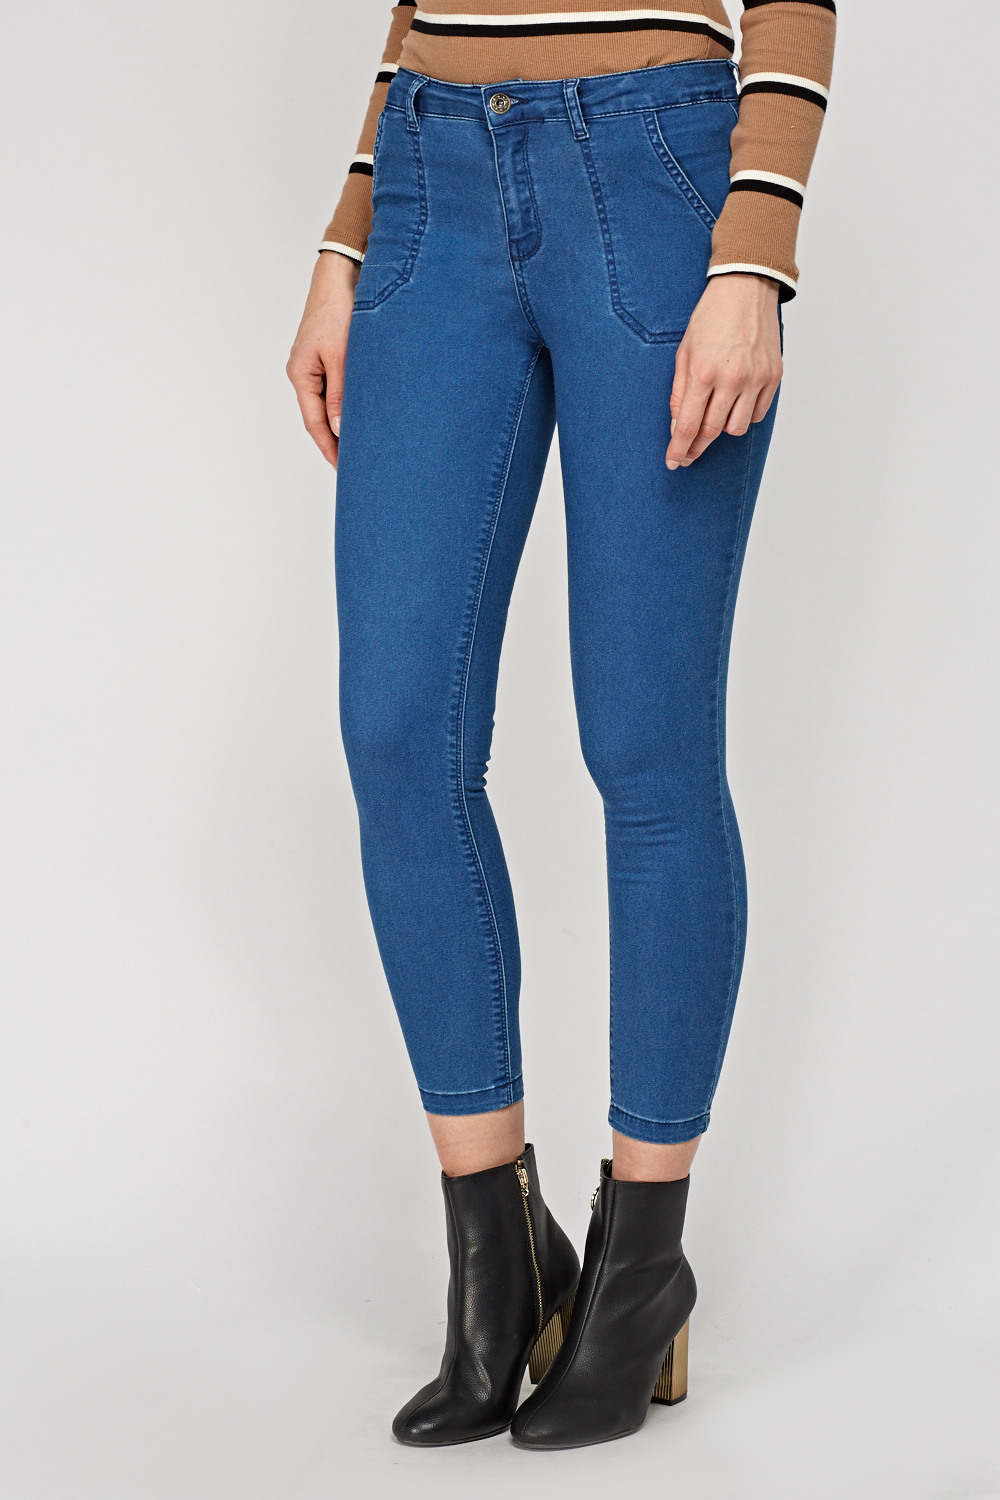 Pocket Side Dark Blue Jeans - Just $7